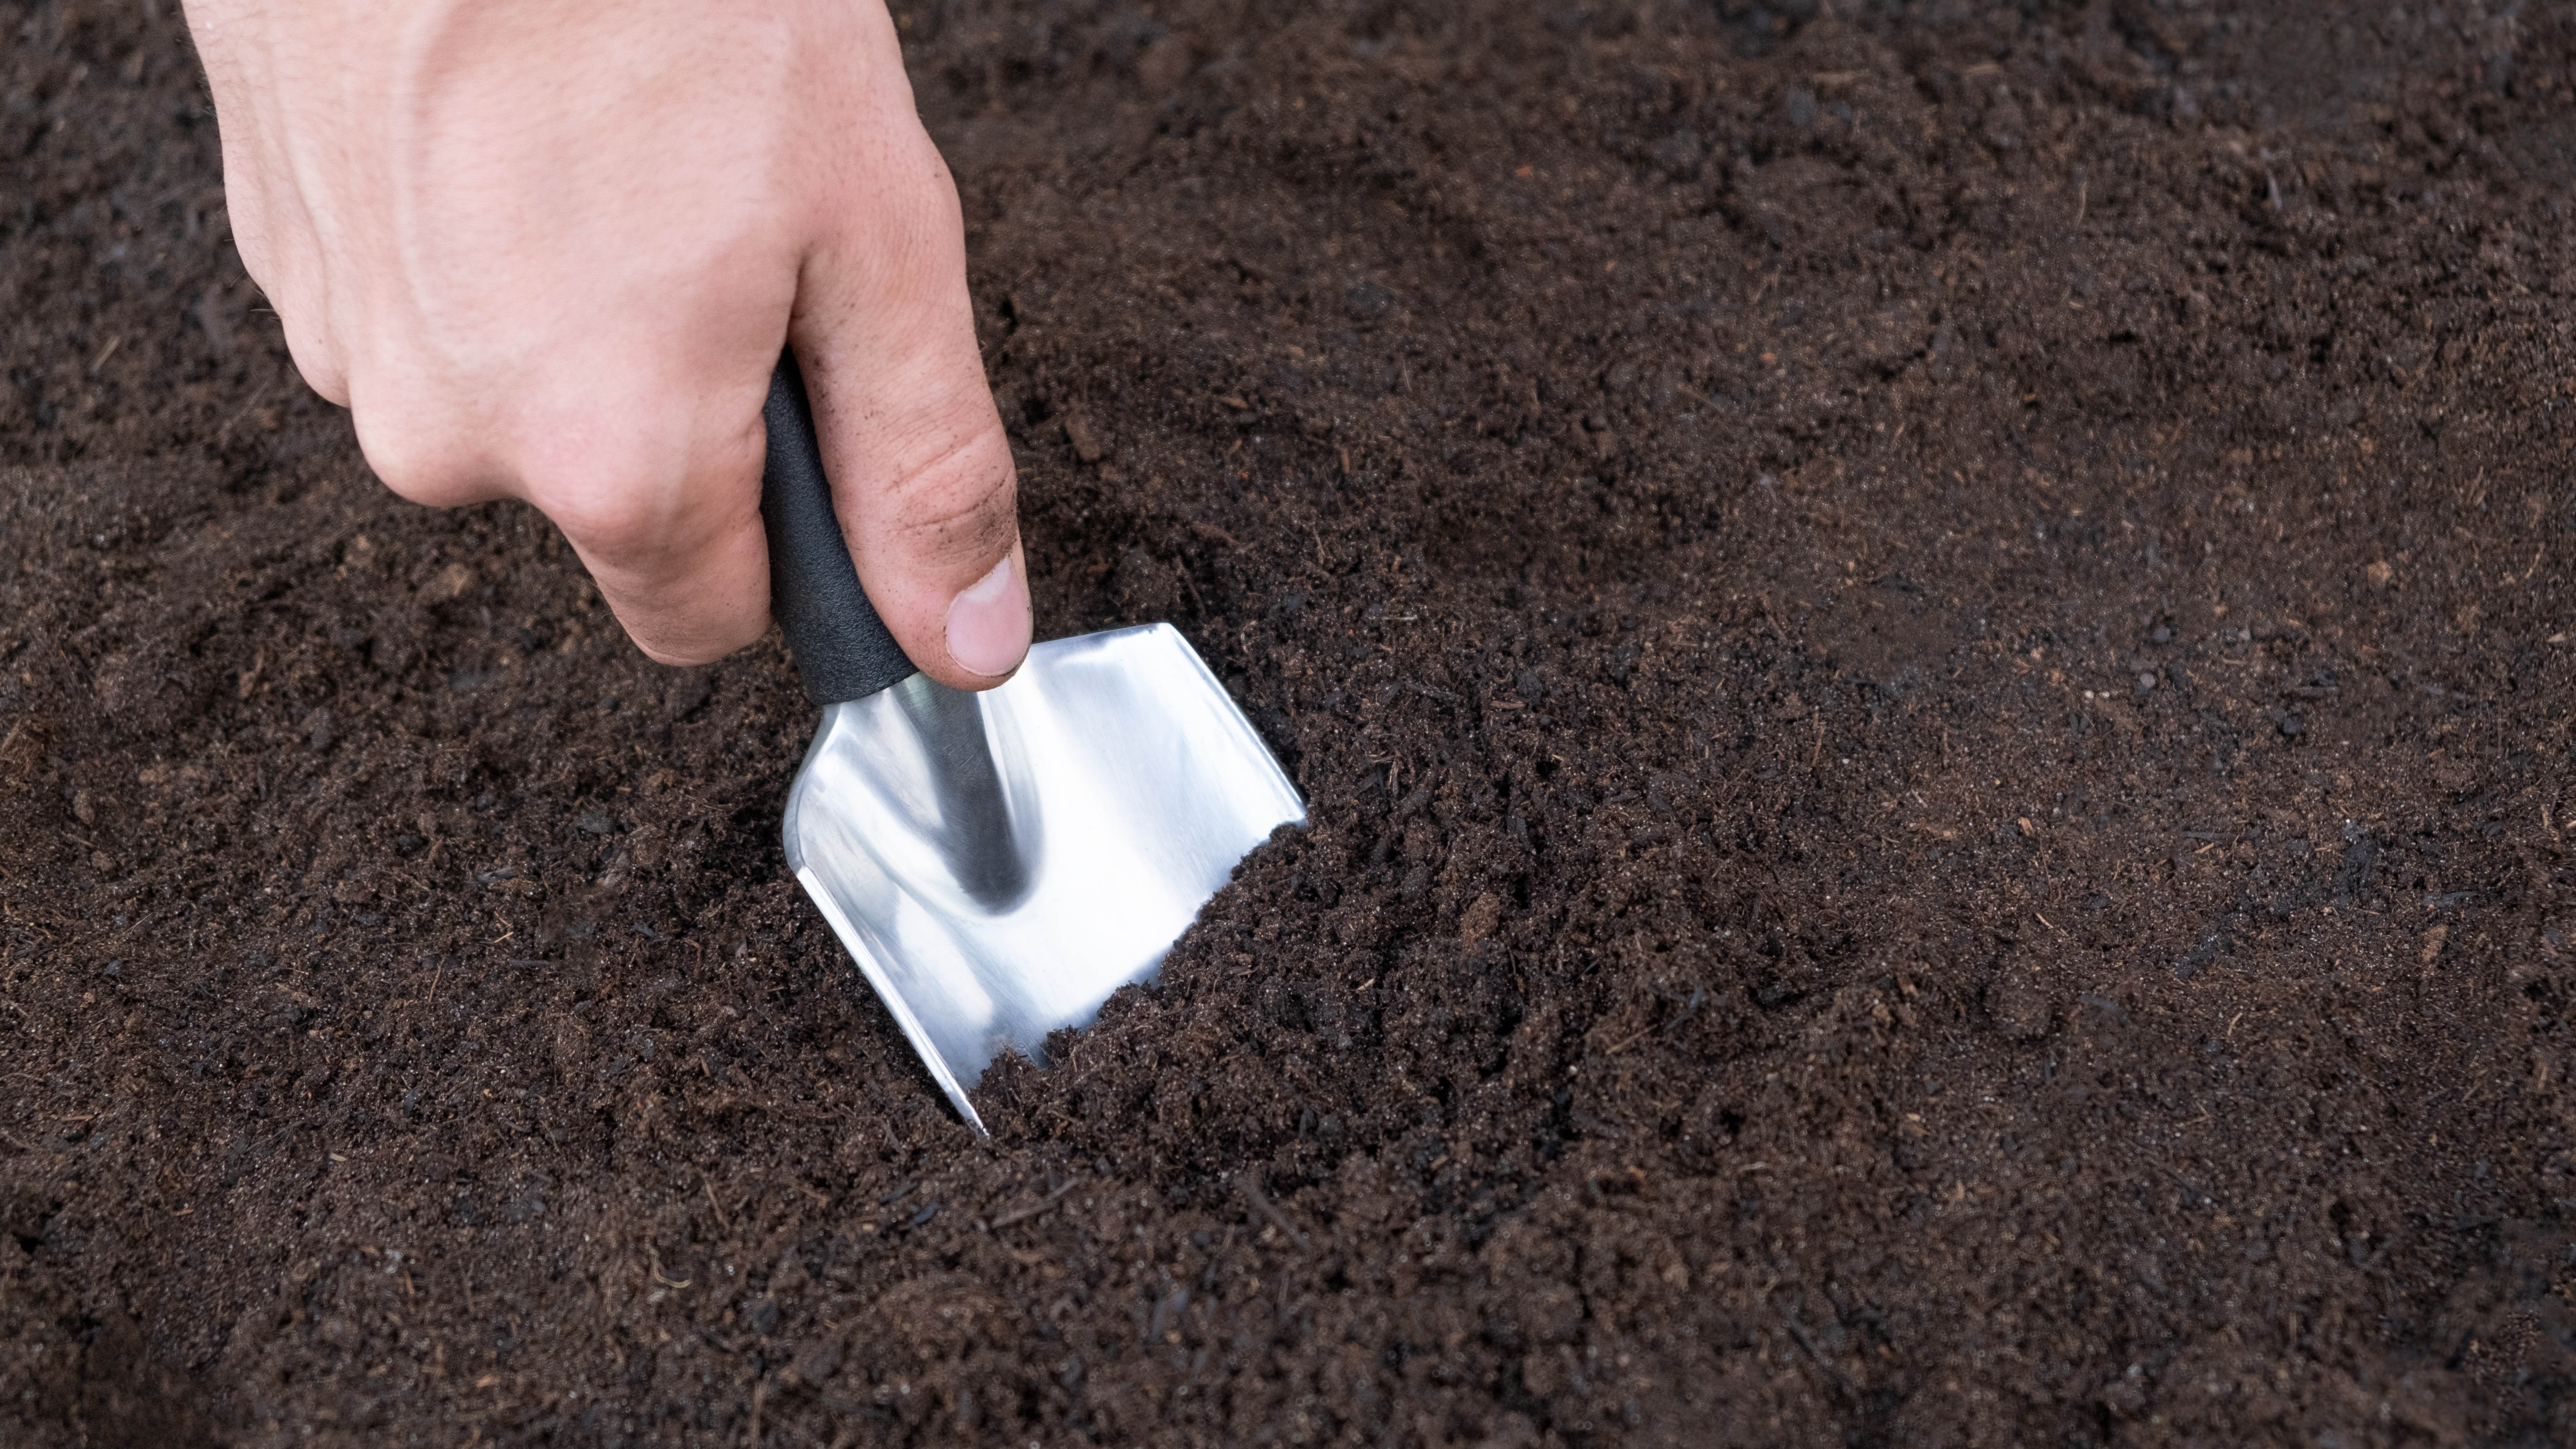 Cavando el suelo en preparación para la siembra